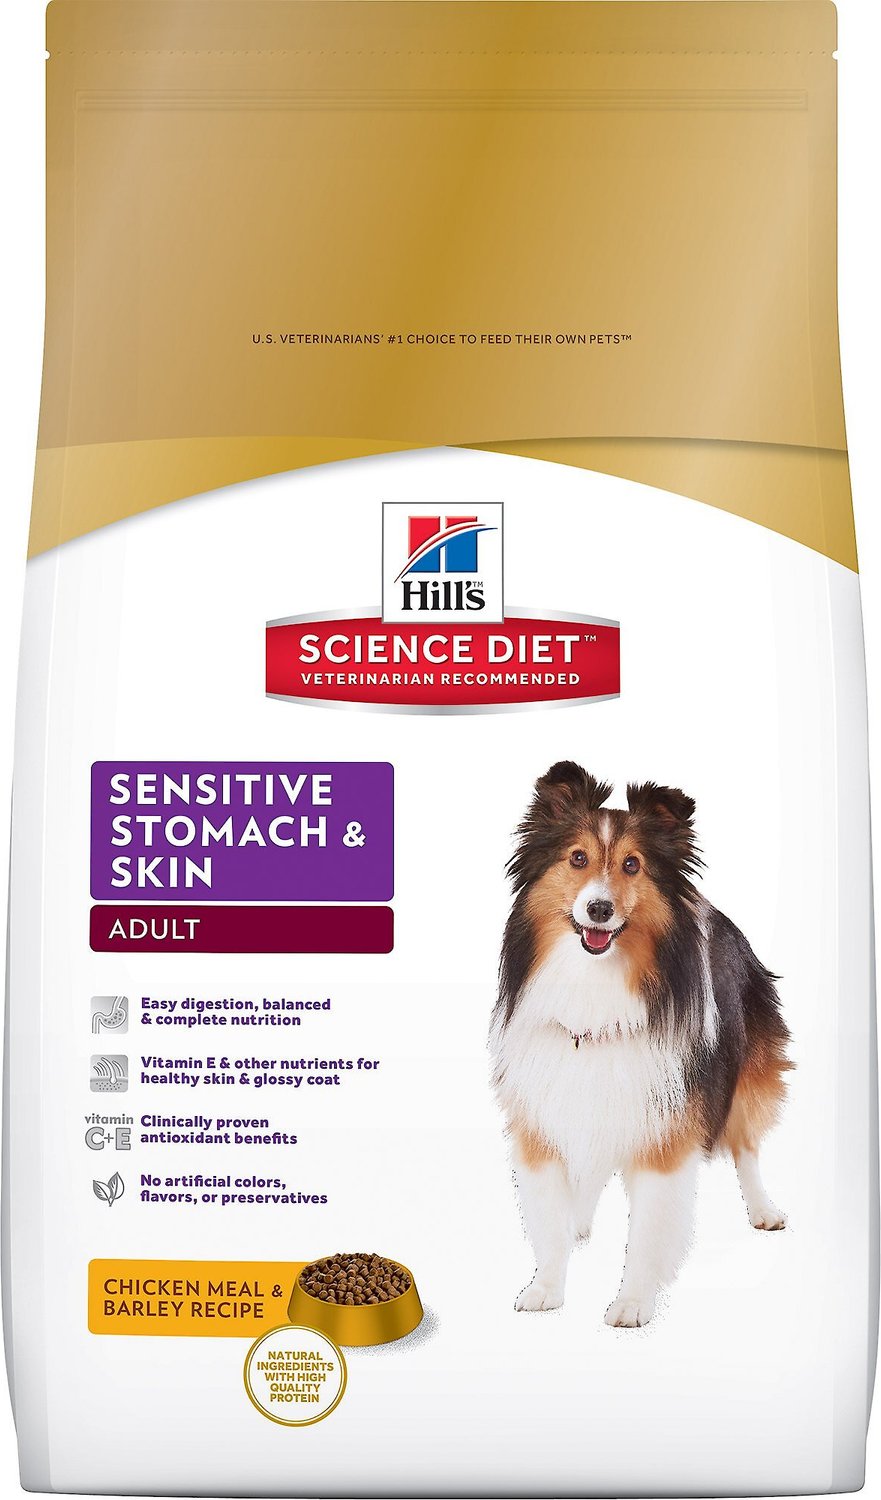 best dog food brands for sensitive stomach